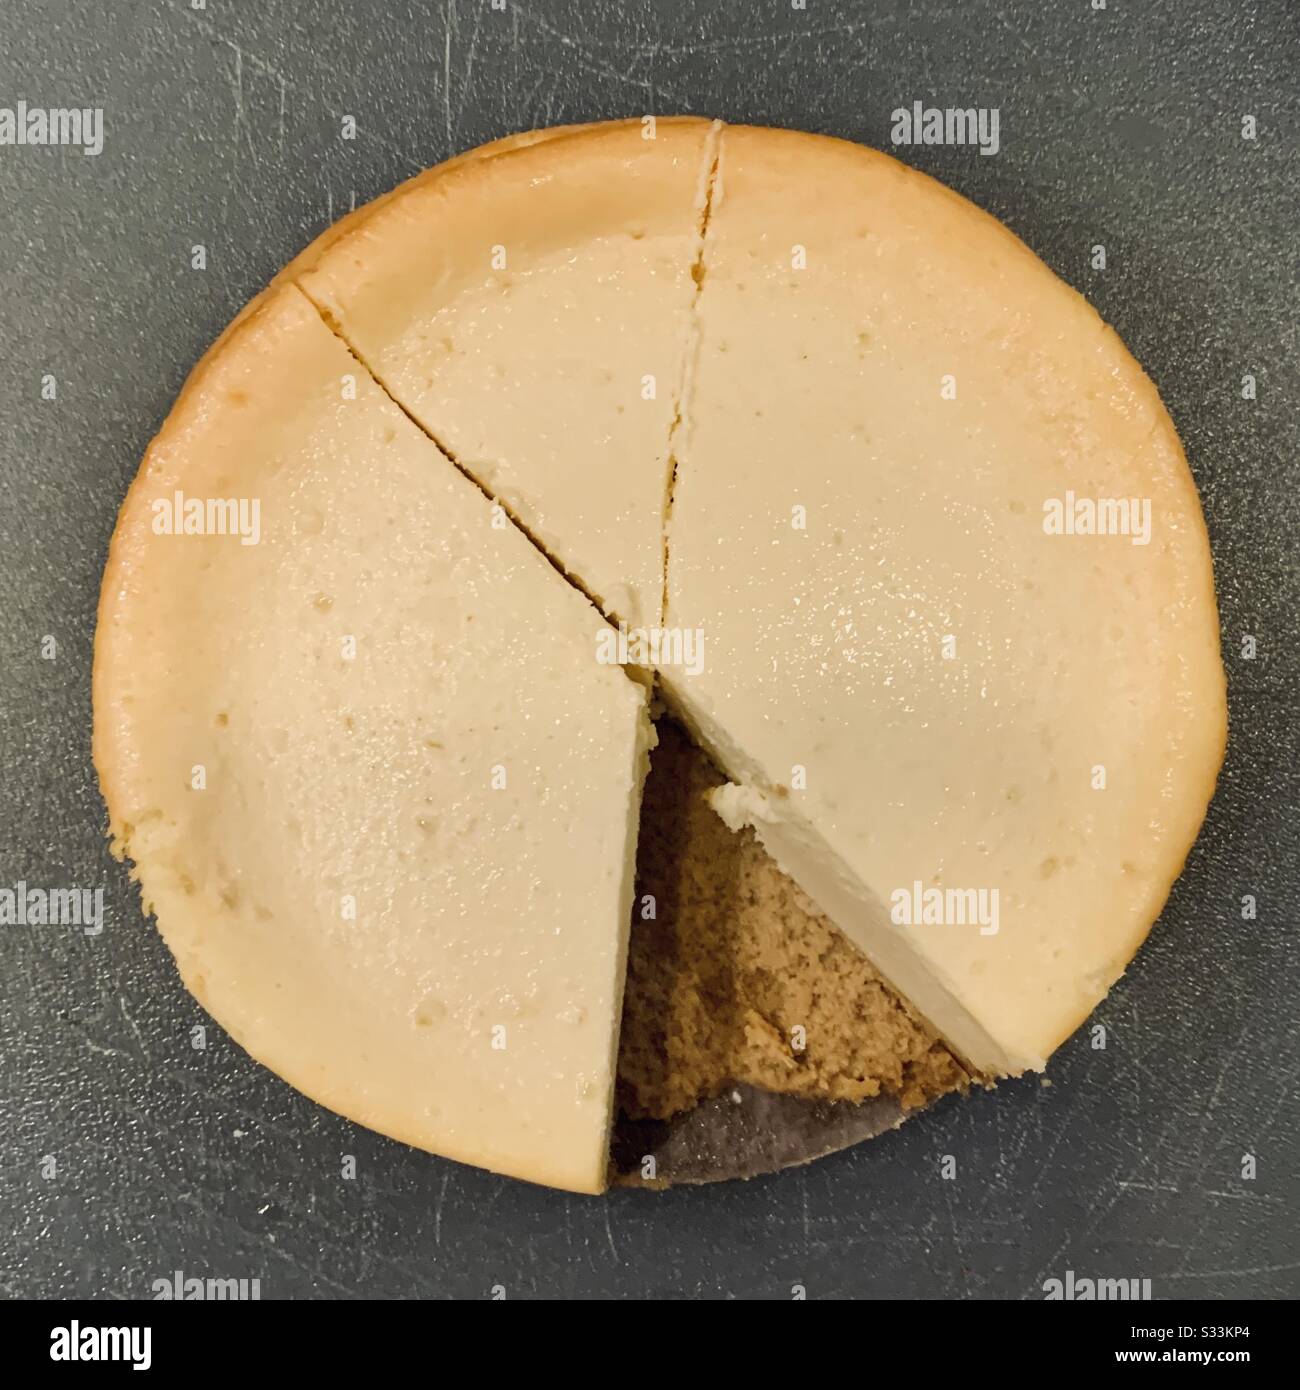 Un délicieux morceau rond de cheesecake prêt à être tranché et servi Banque D'Images